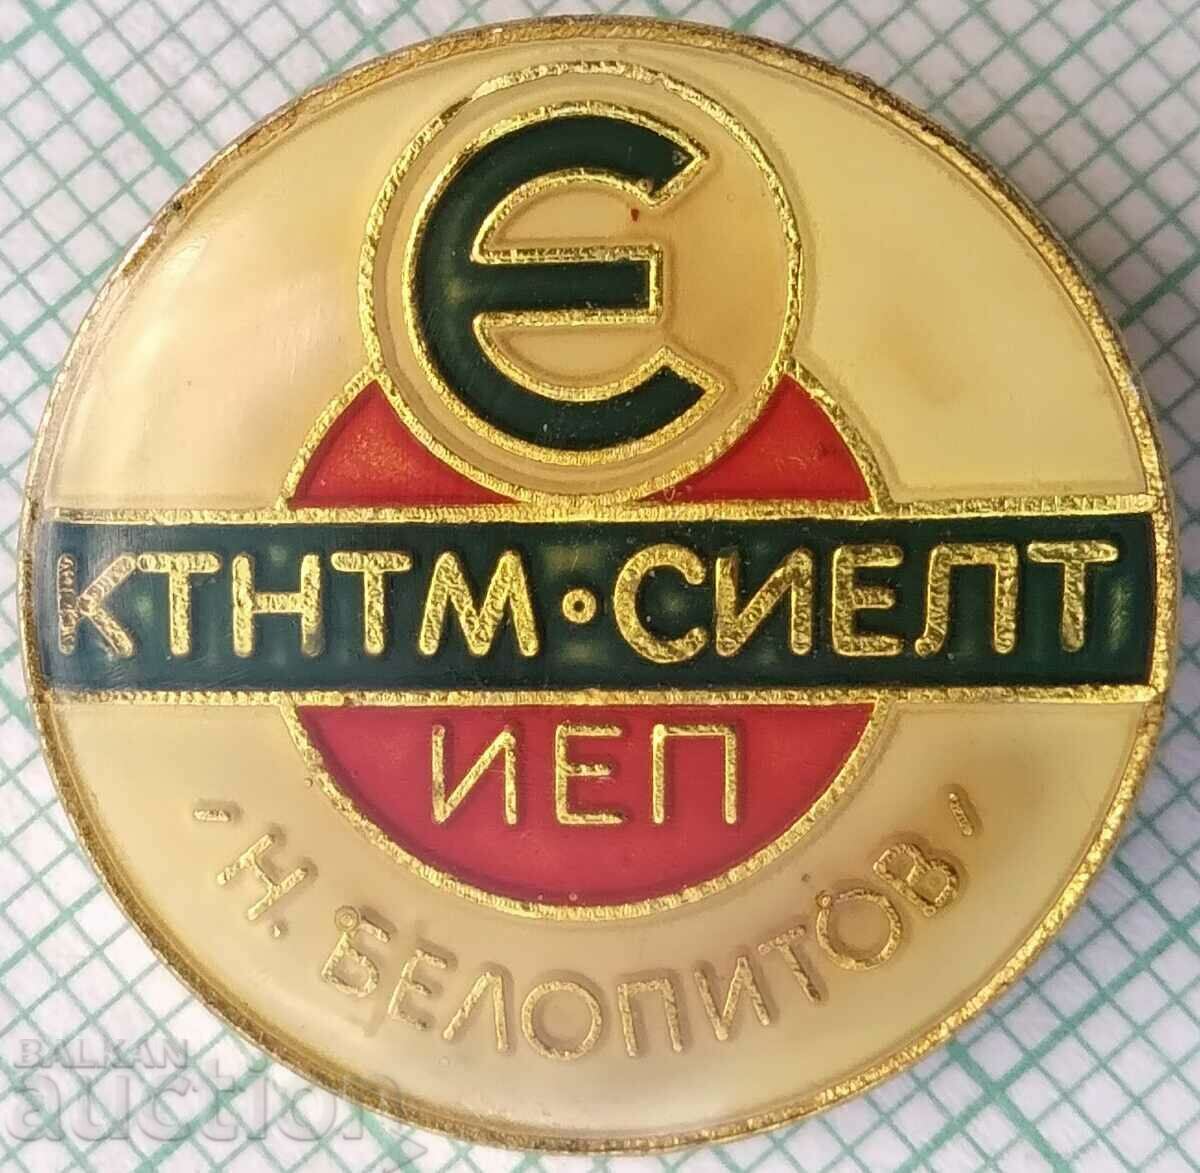 15640 Badge - KTNTM SIELT IEP Elektroimpex N. Belokopitov